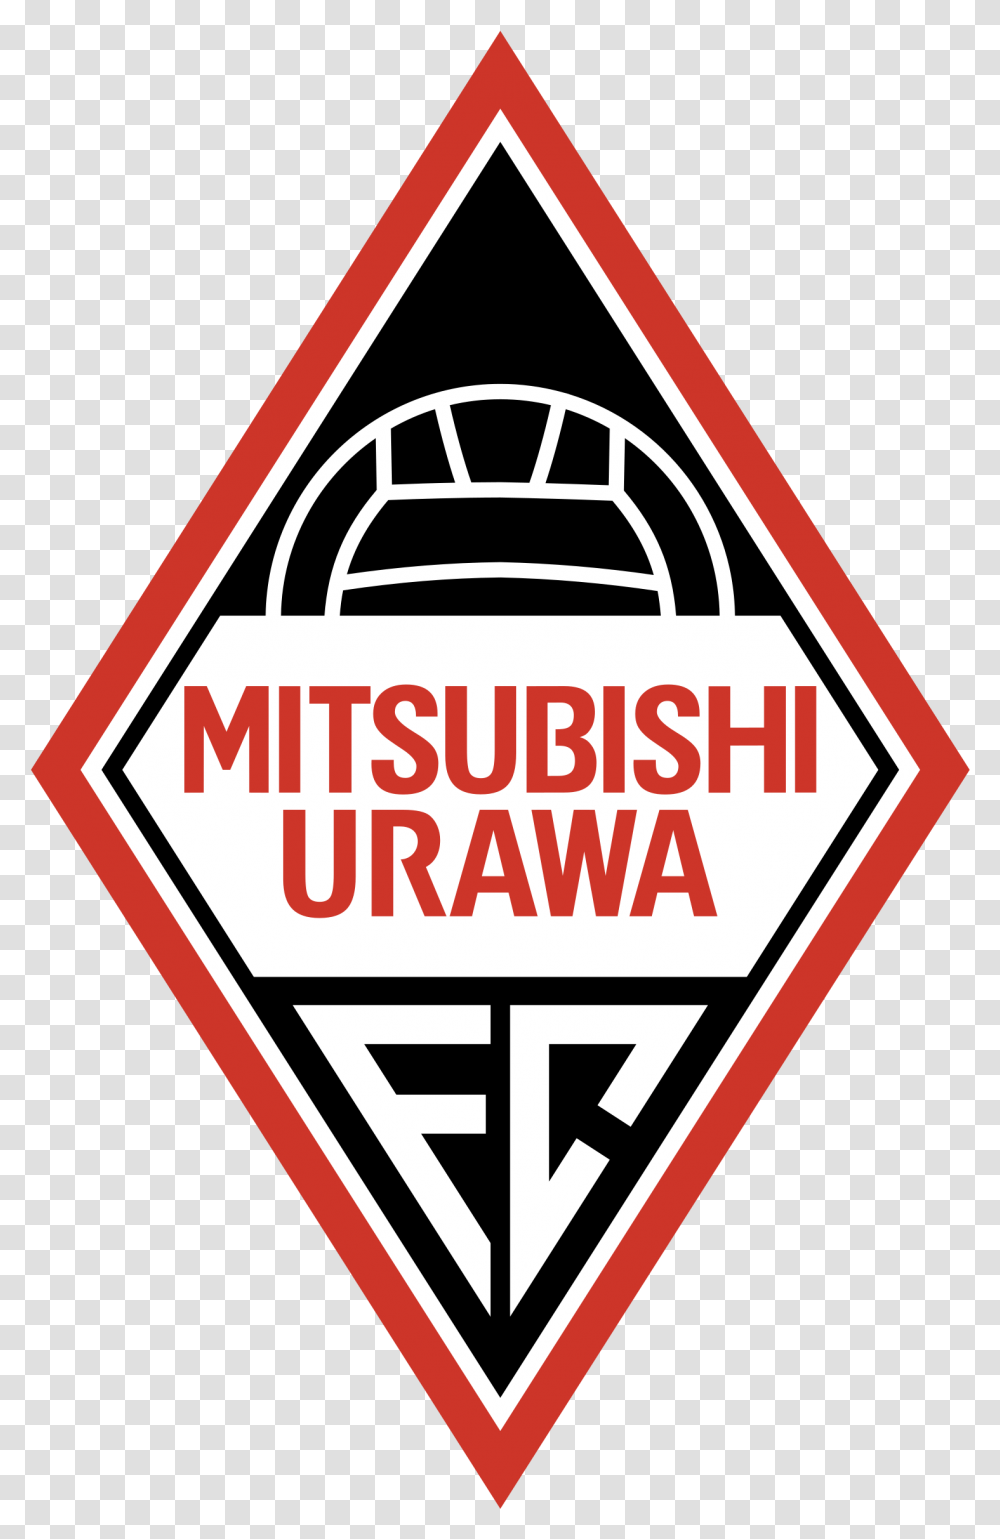 Download Mitsubishi Urawa Logo Urawa Red Diamonds Logo, Symbol, Sign, Road Sign, Trademark Transparent Png